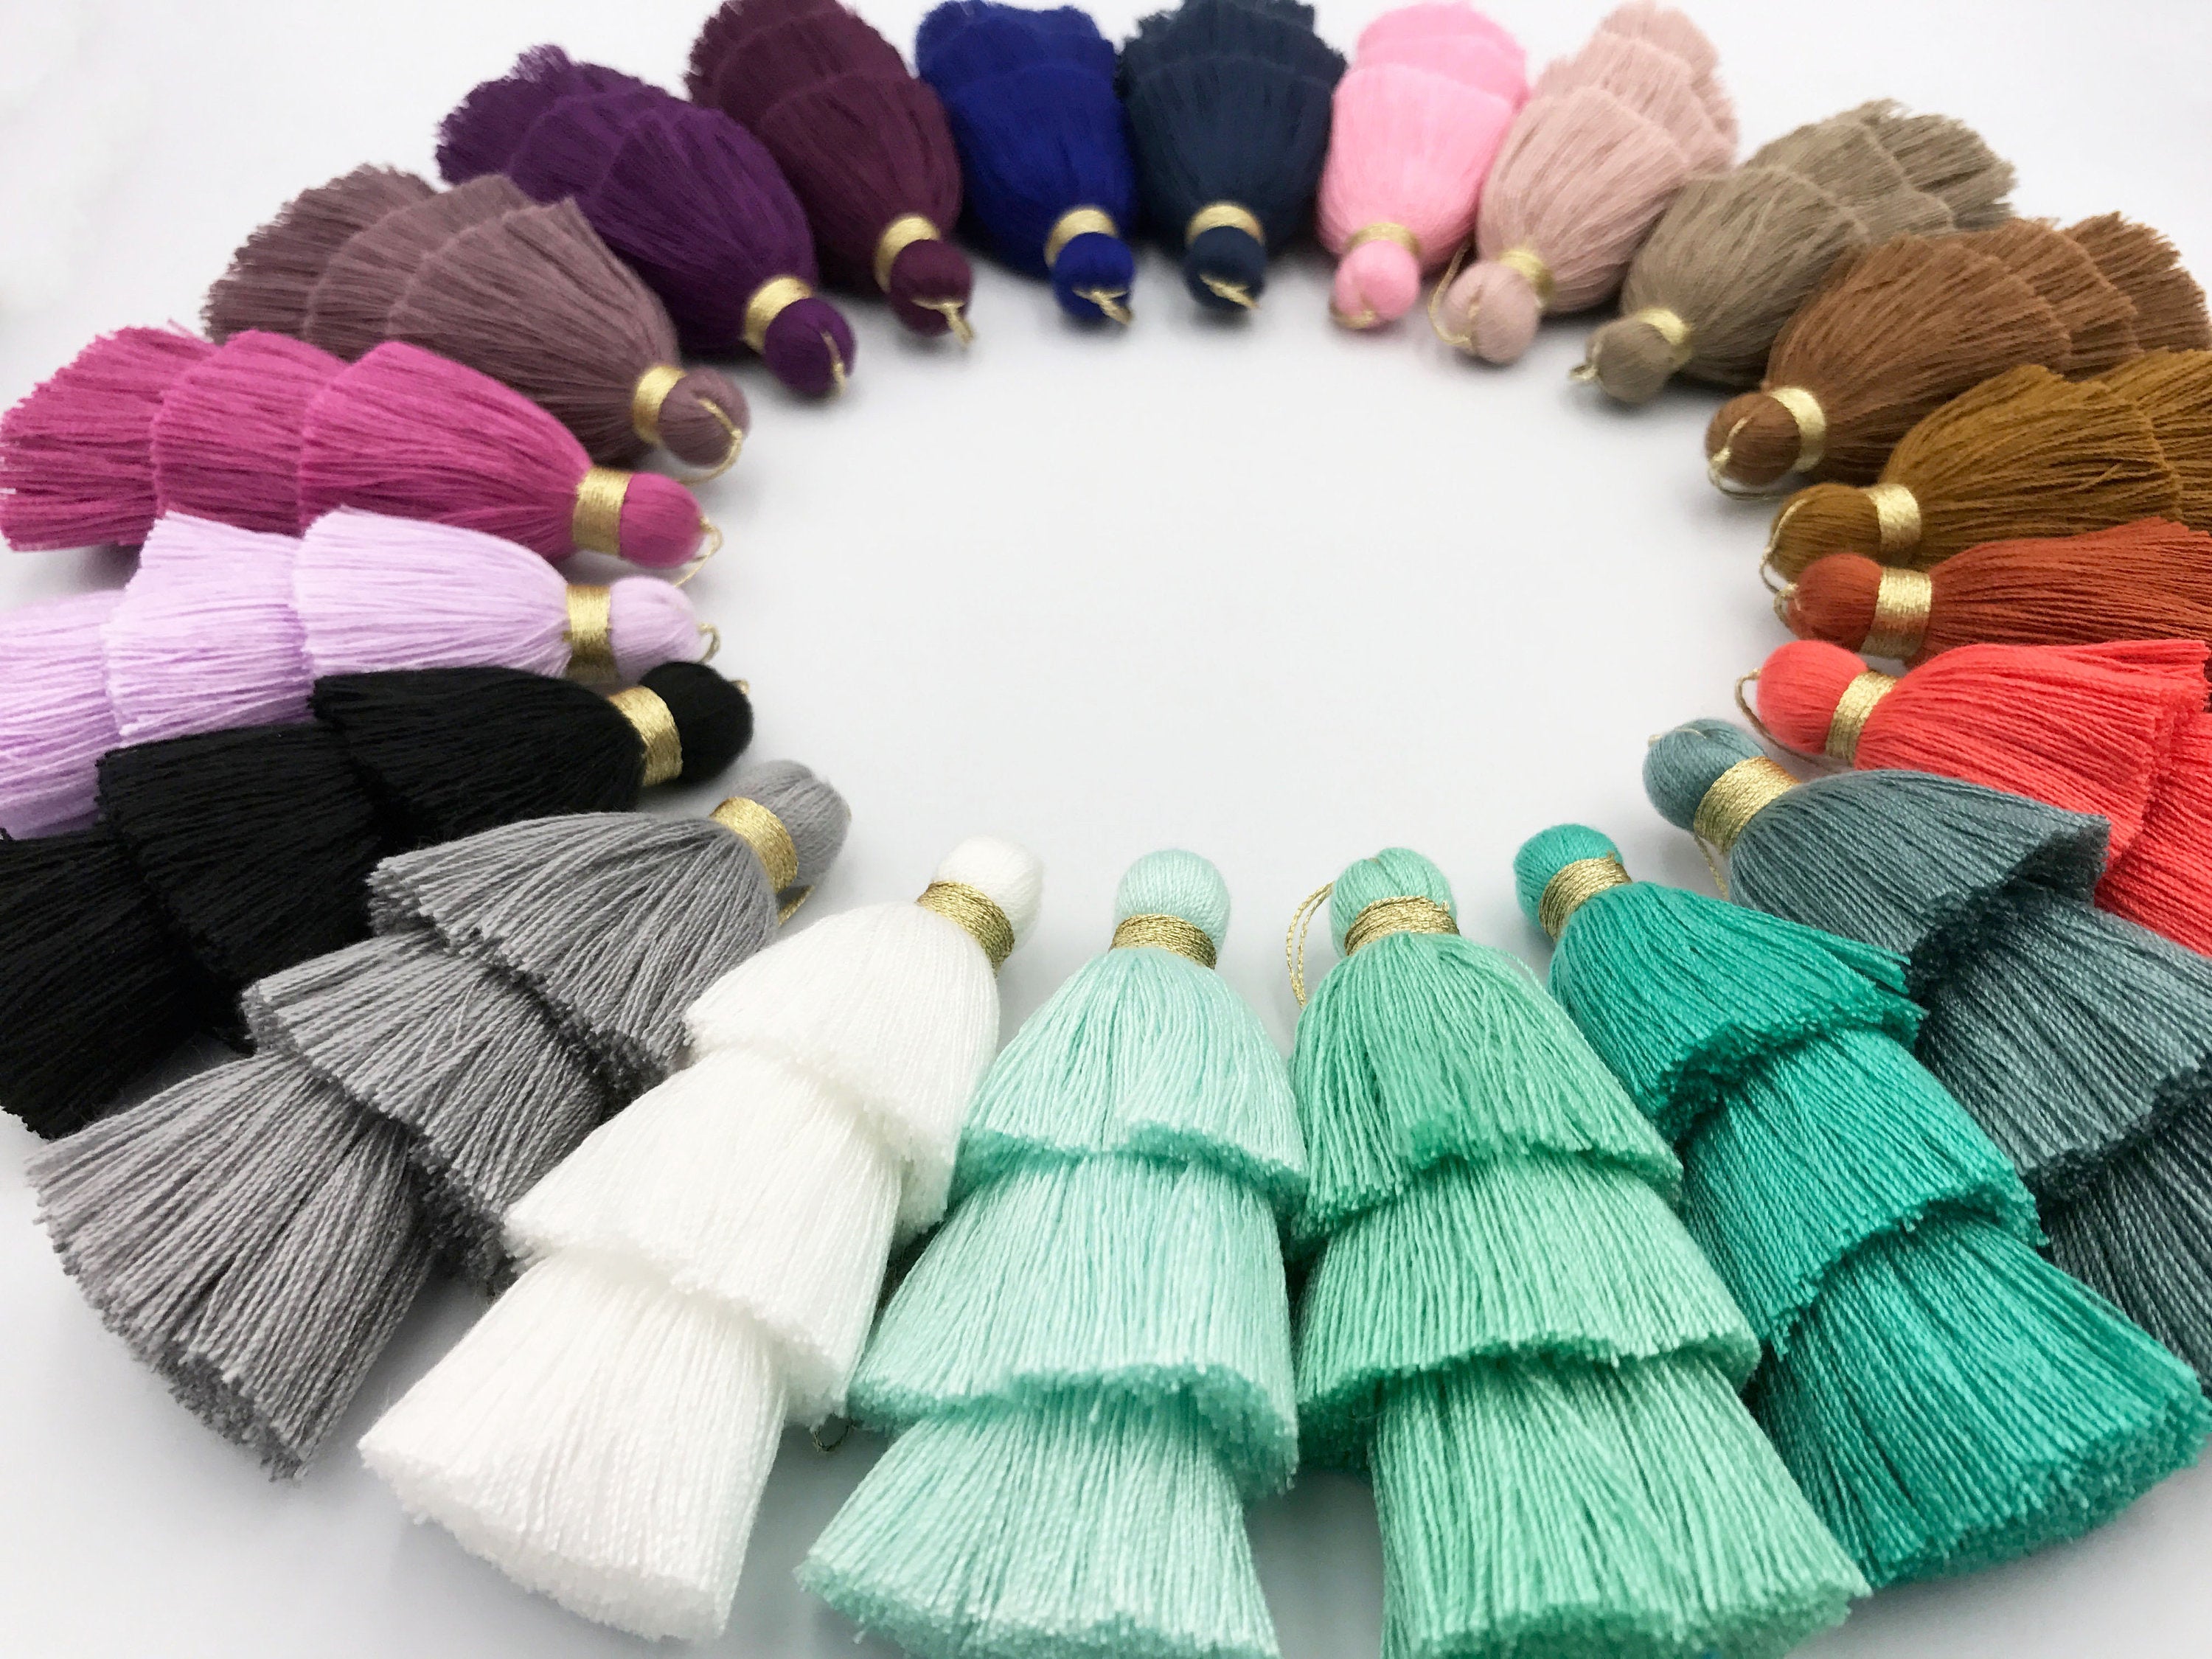 1pc, 8cm 3 Layer Single Coloured Cotton Tassel - Choose your colour